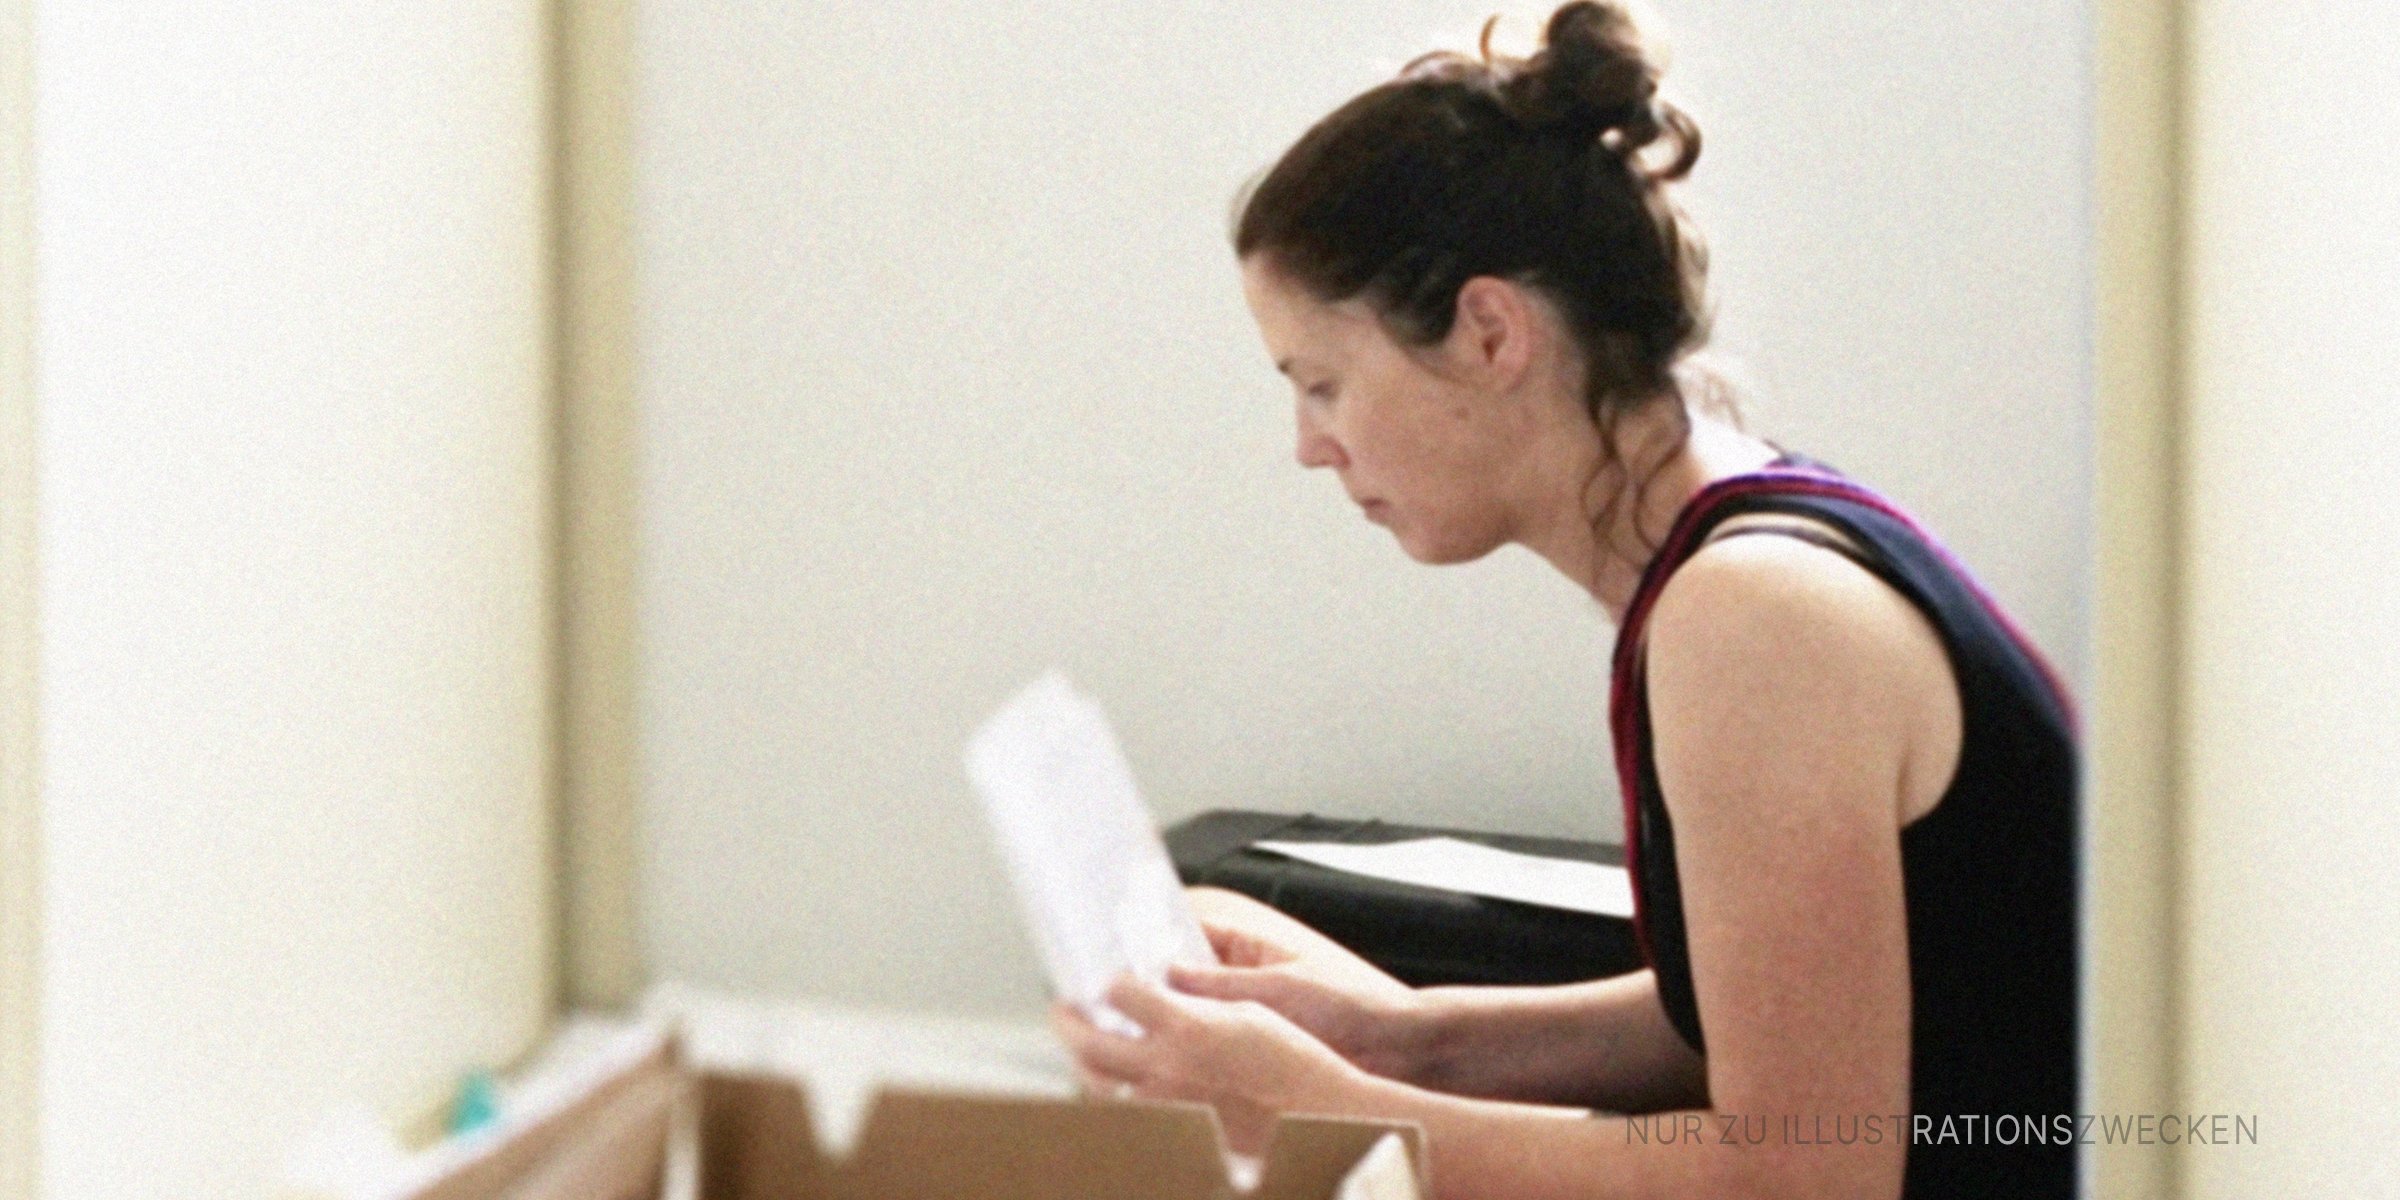 Frau liest einen Brief, der in einer Kiste gefunden wurde. | Quelle: Getty Images